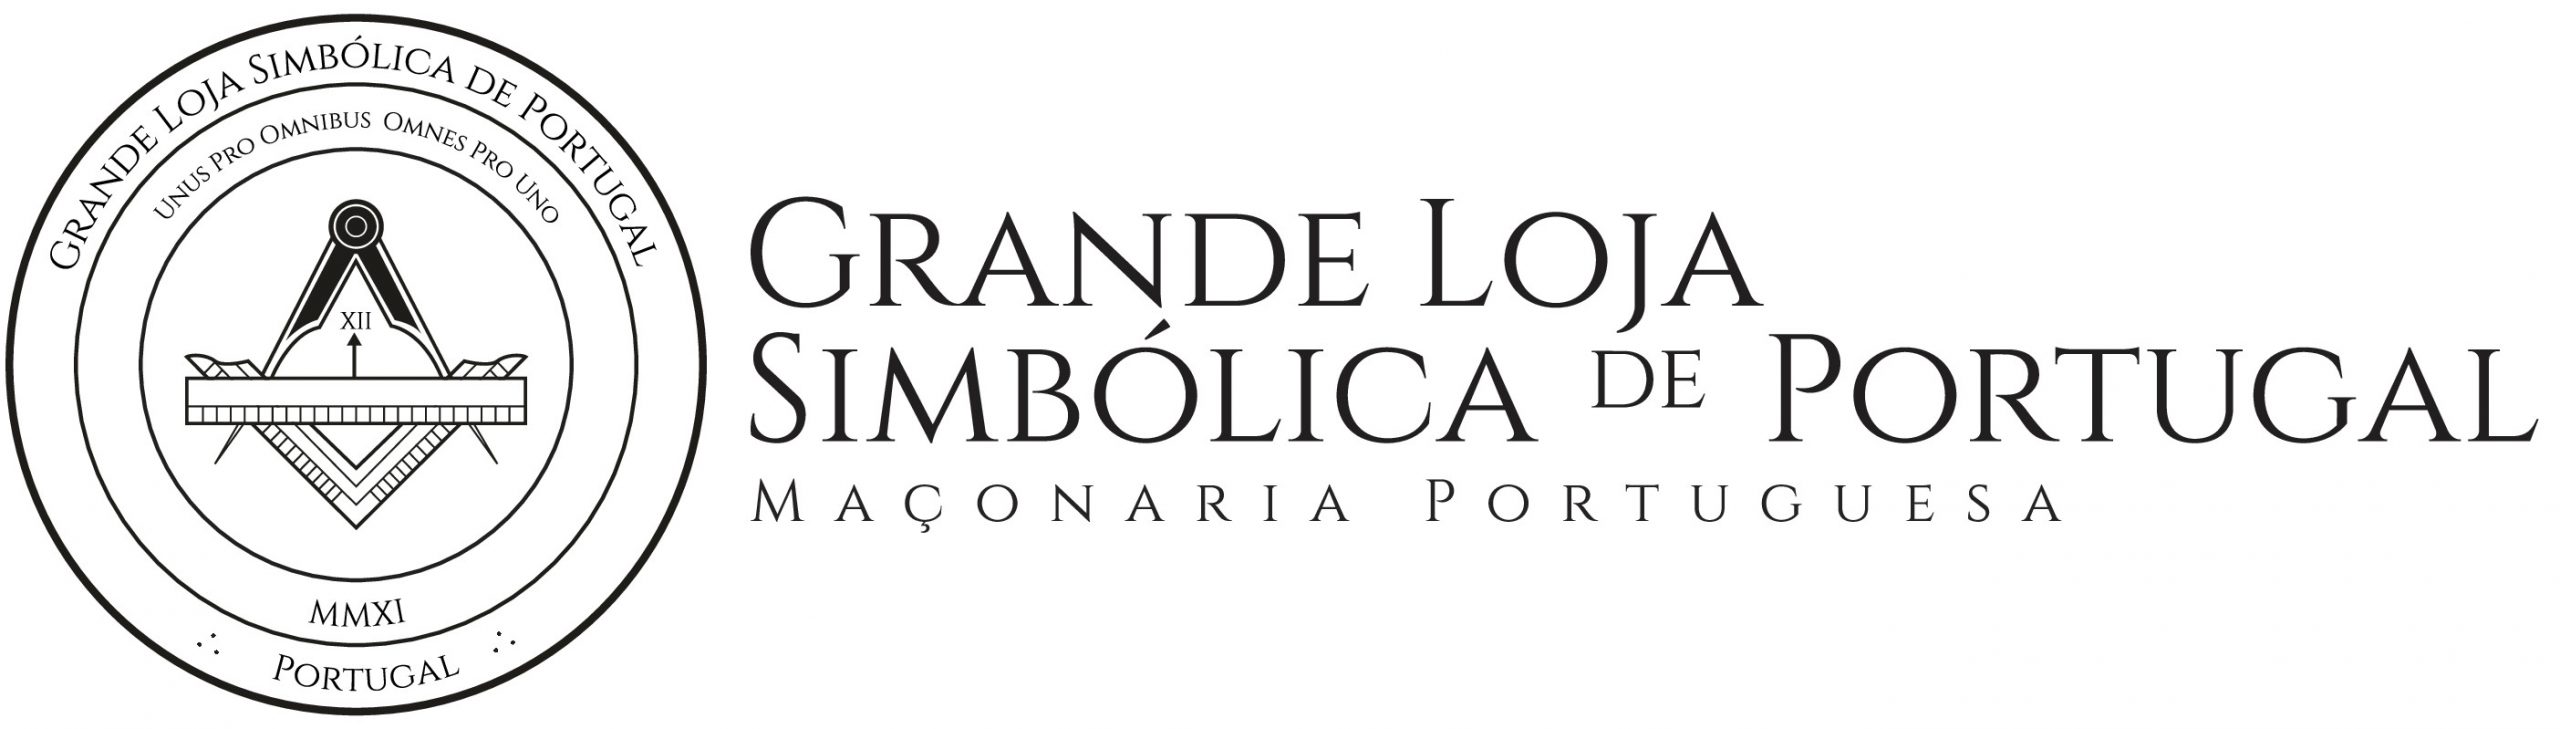 Logo Grande Loja Simbólica de Portugal - Horizontal_2021.jpg